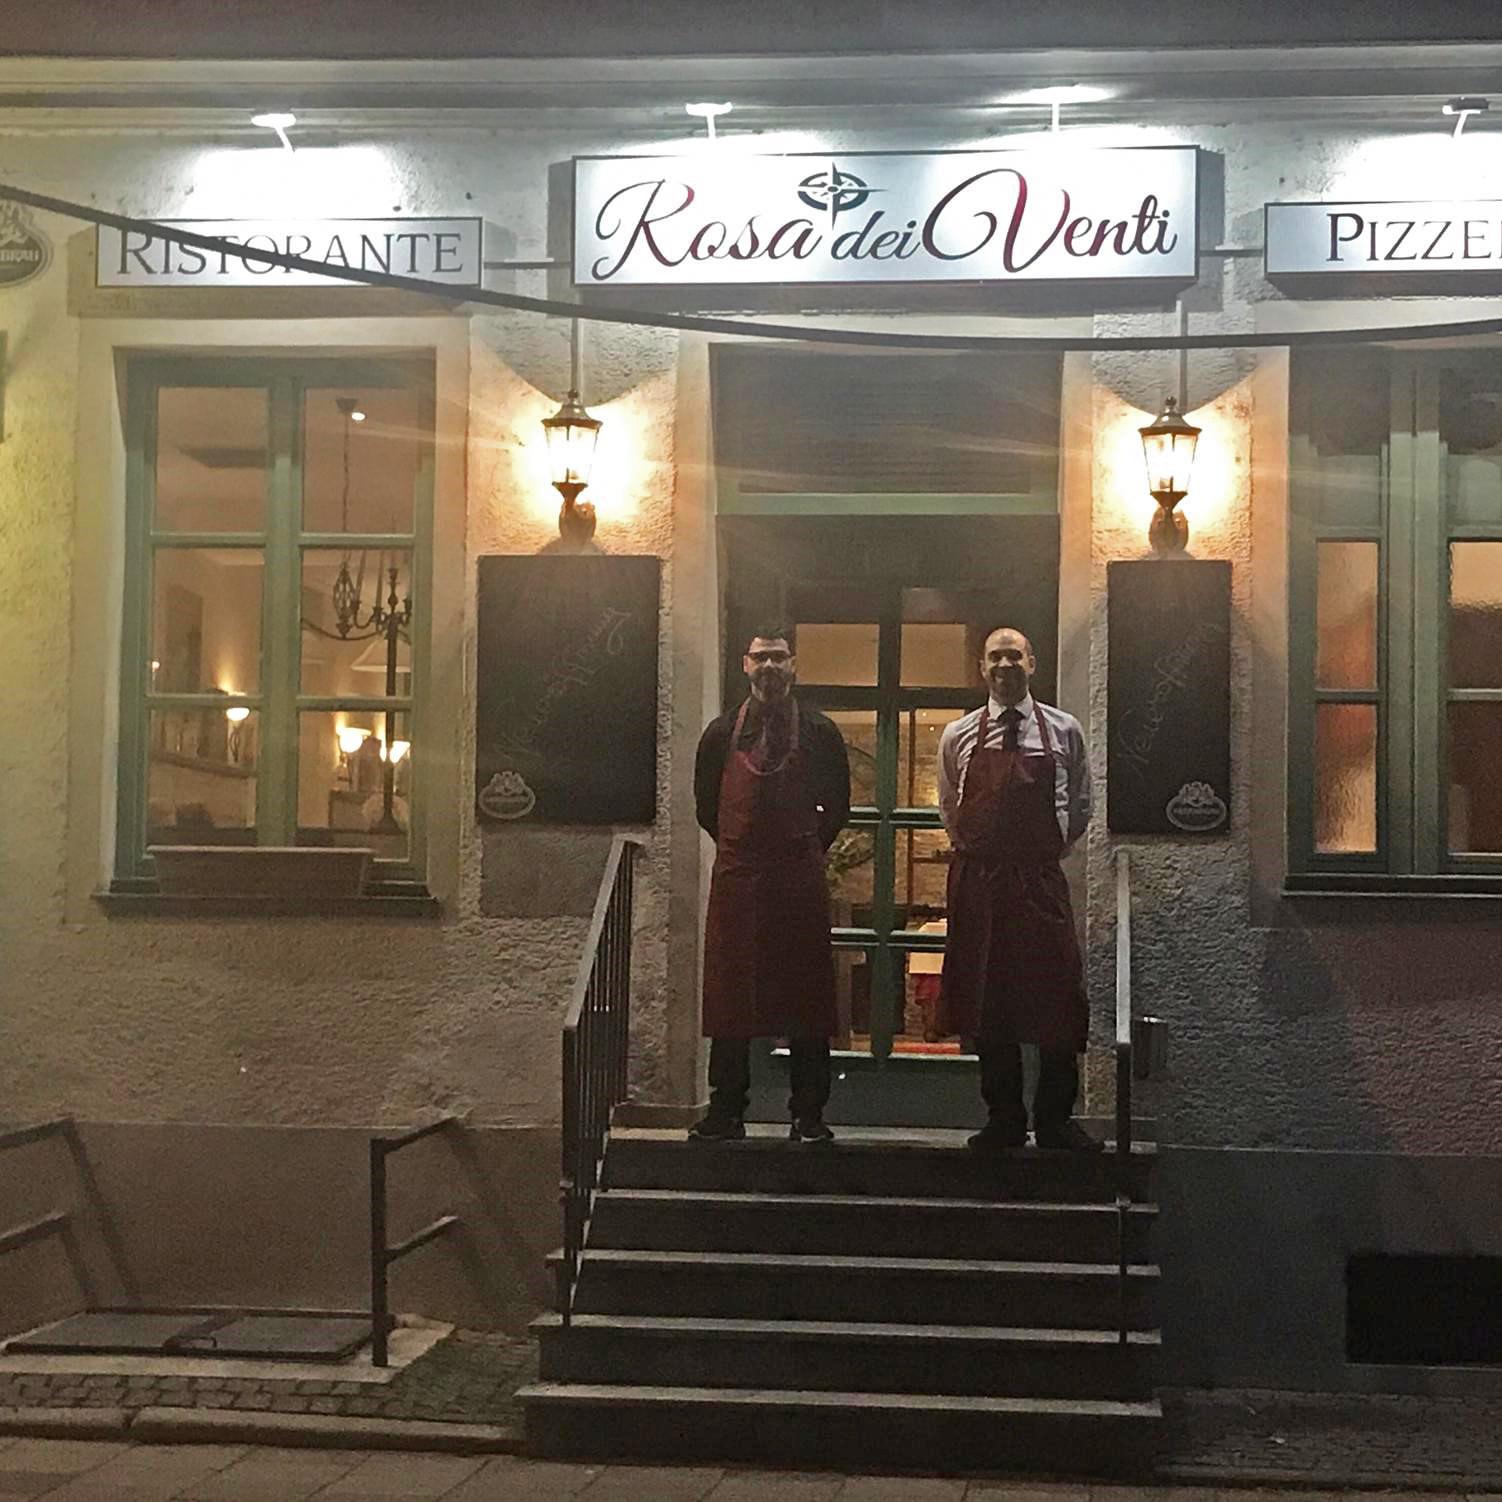 Restaurant "Ristorante & Pizzeria Rosa dei Venti" in München